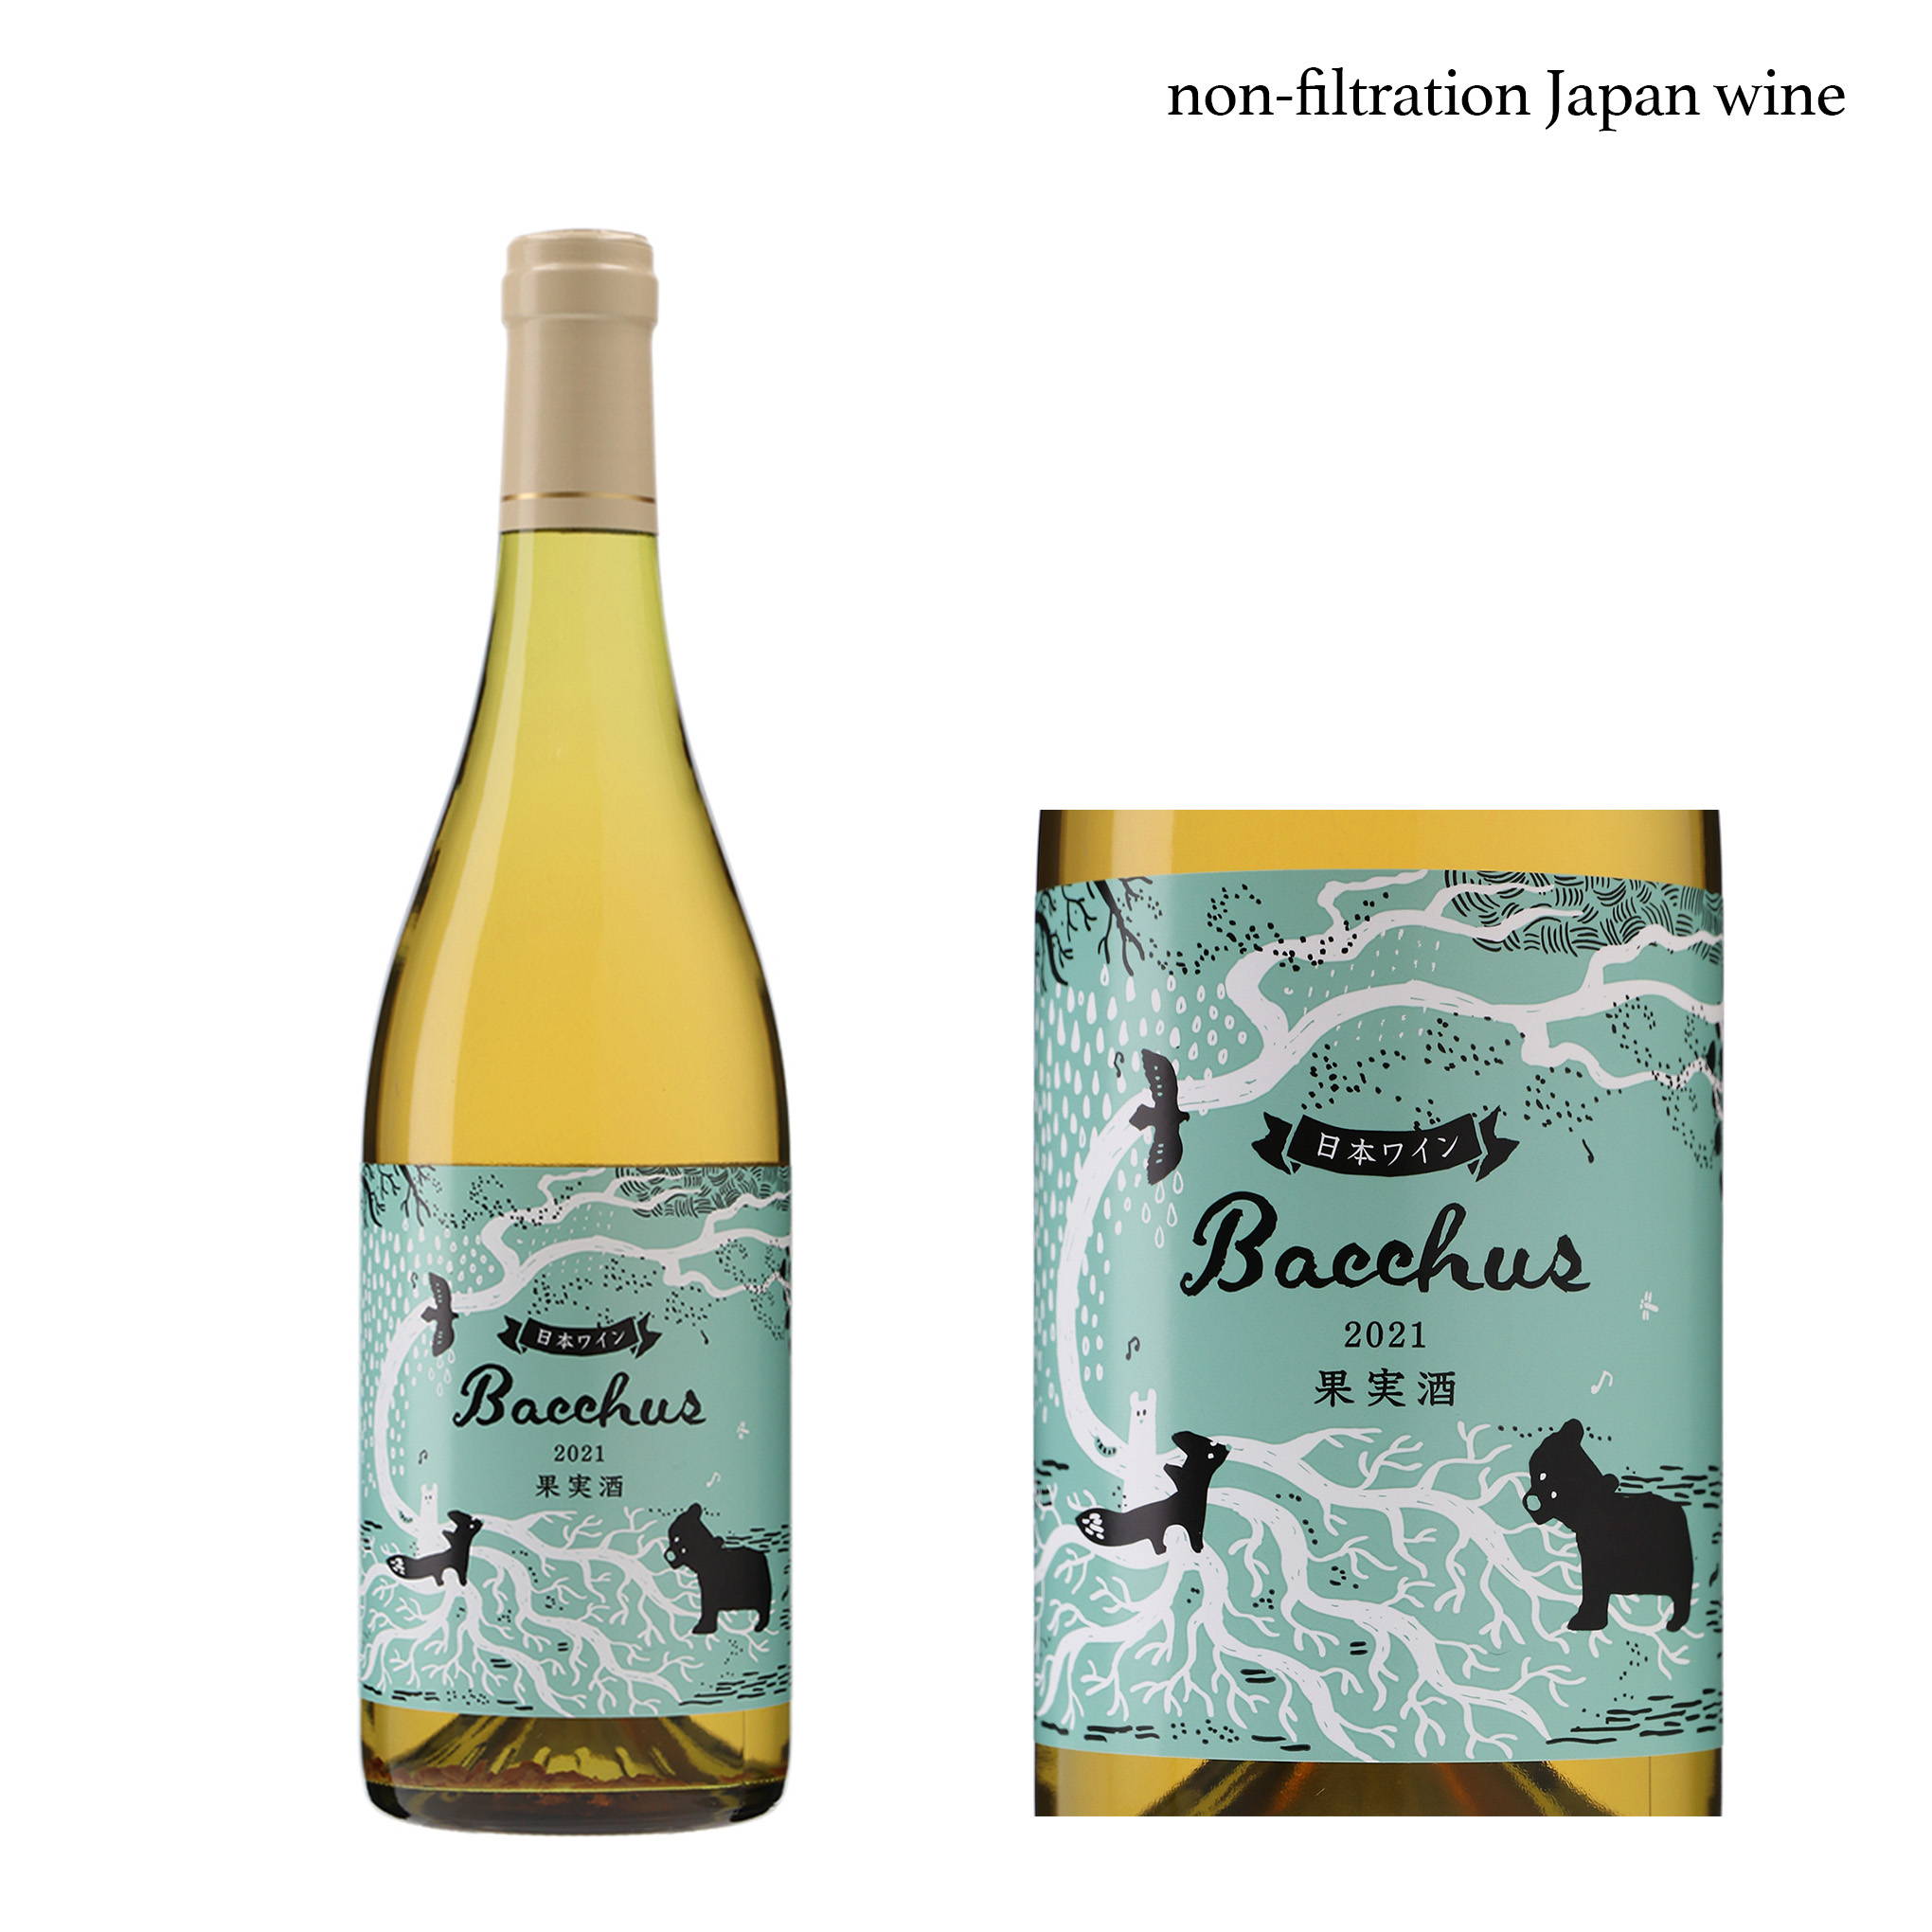 華やかな香りが心地よい！ドイツ系アロマティック品種バッカスを野生酵母で発酵させた『多田ワイナリー』を代表する白ワイン『2021 バッカス』。